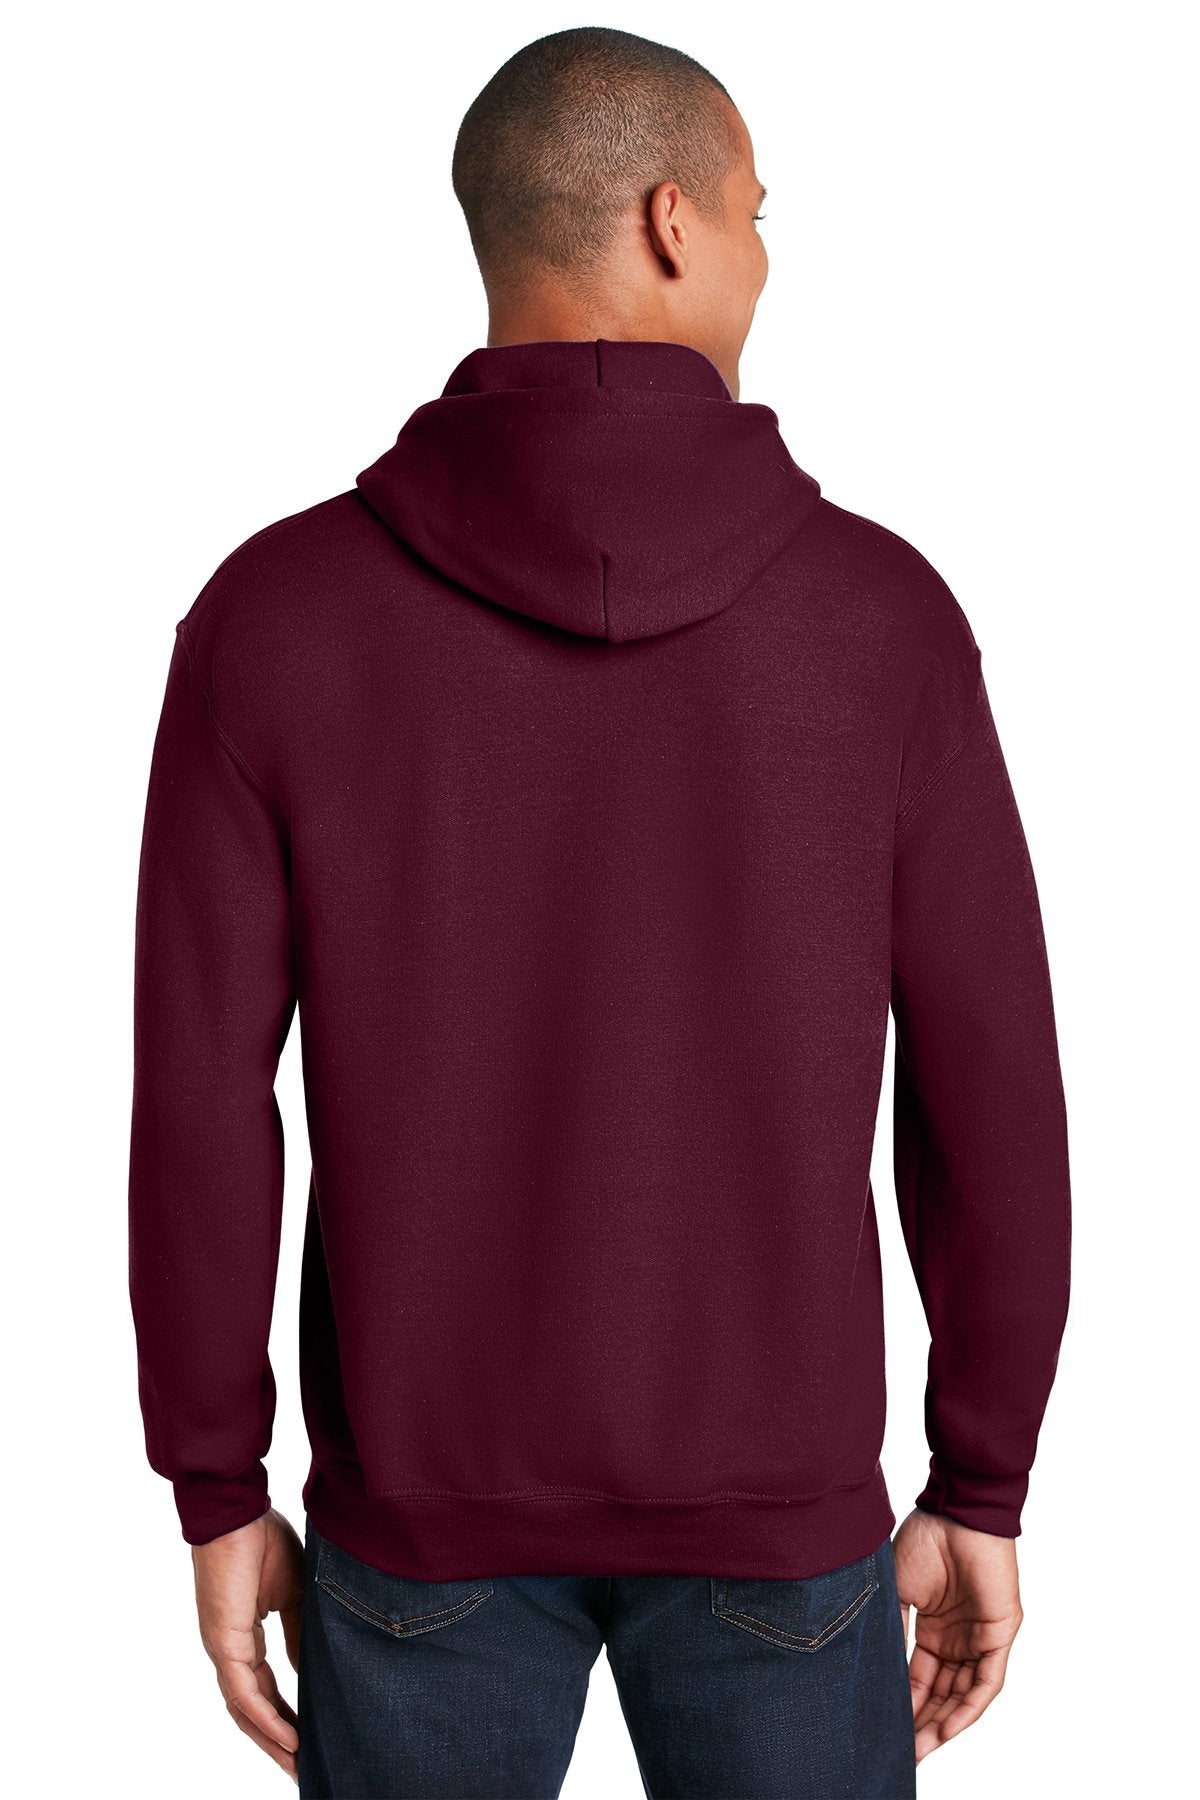 Gildan Heavy Blend Hooded Sweatshirt Maroon